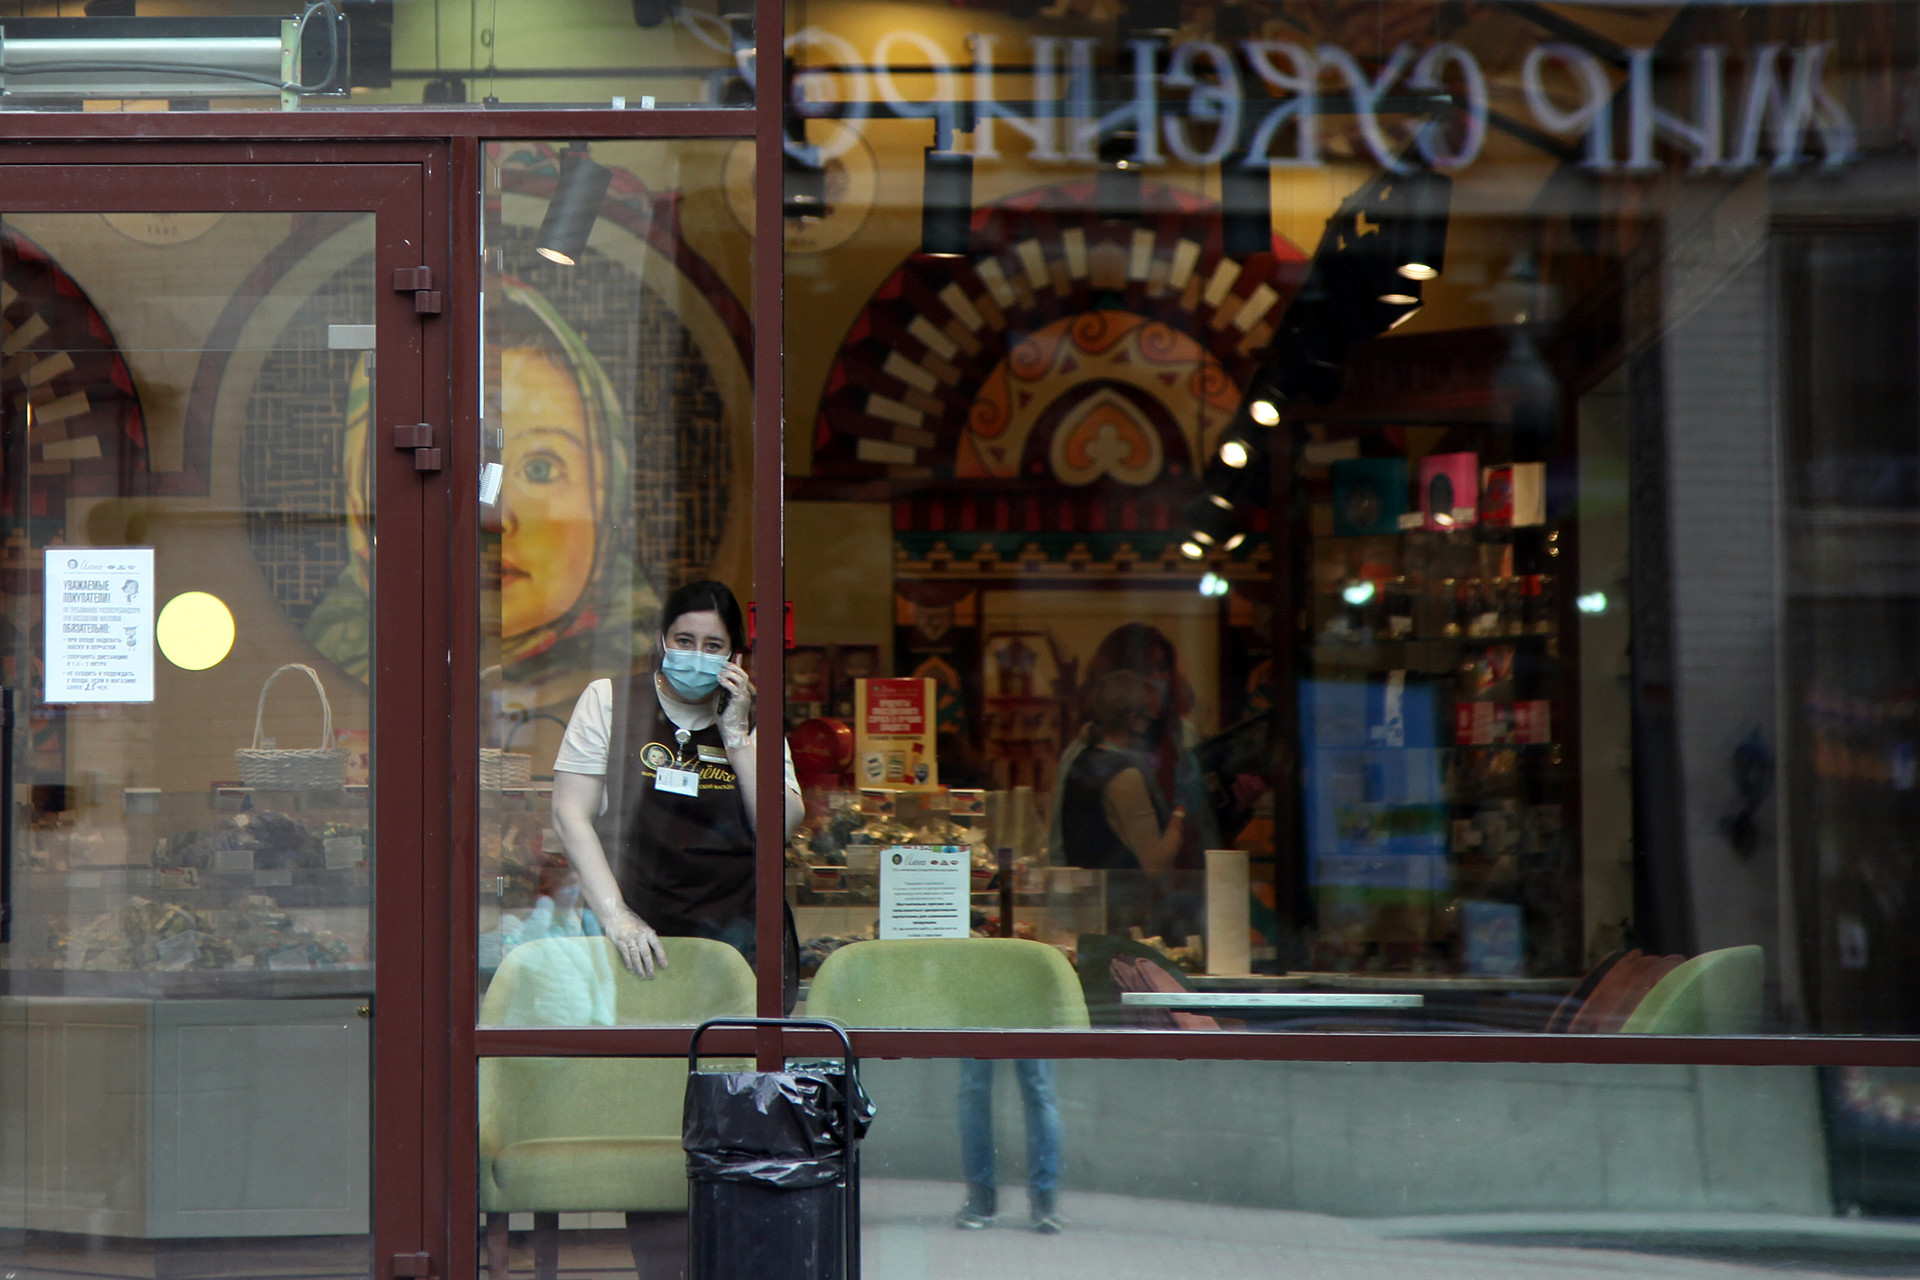 Seorang pekerja toko sedang berbicara di telepon di sebuah toko cokelat khas Rusia Alyonka, yang sepi pembeli di daerah Arbatskaya Ulitsa.